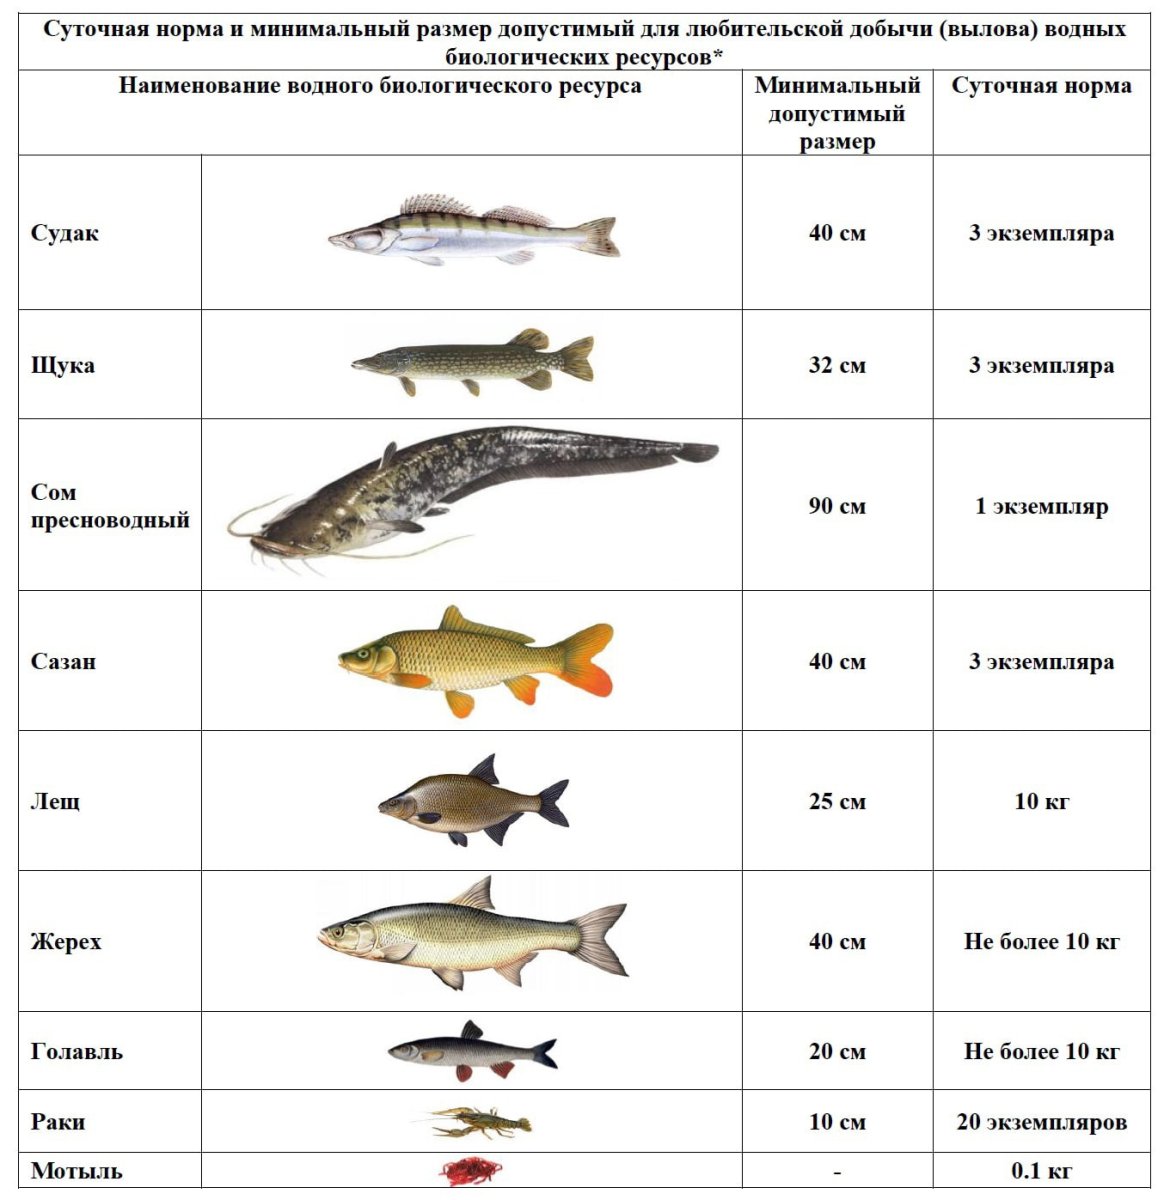 Разрешенный лов рыбы. Разрешенный размер судака. Таблица размеров допустимый пойманной рыбы. Разрешённый размер рыбы для вылова в Московской области 2021. Размер судака разрешенный к вылову.